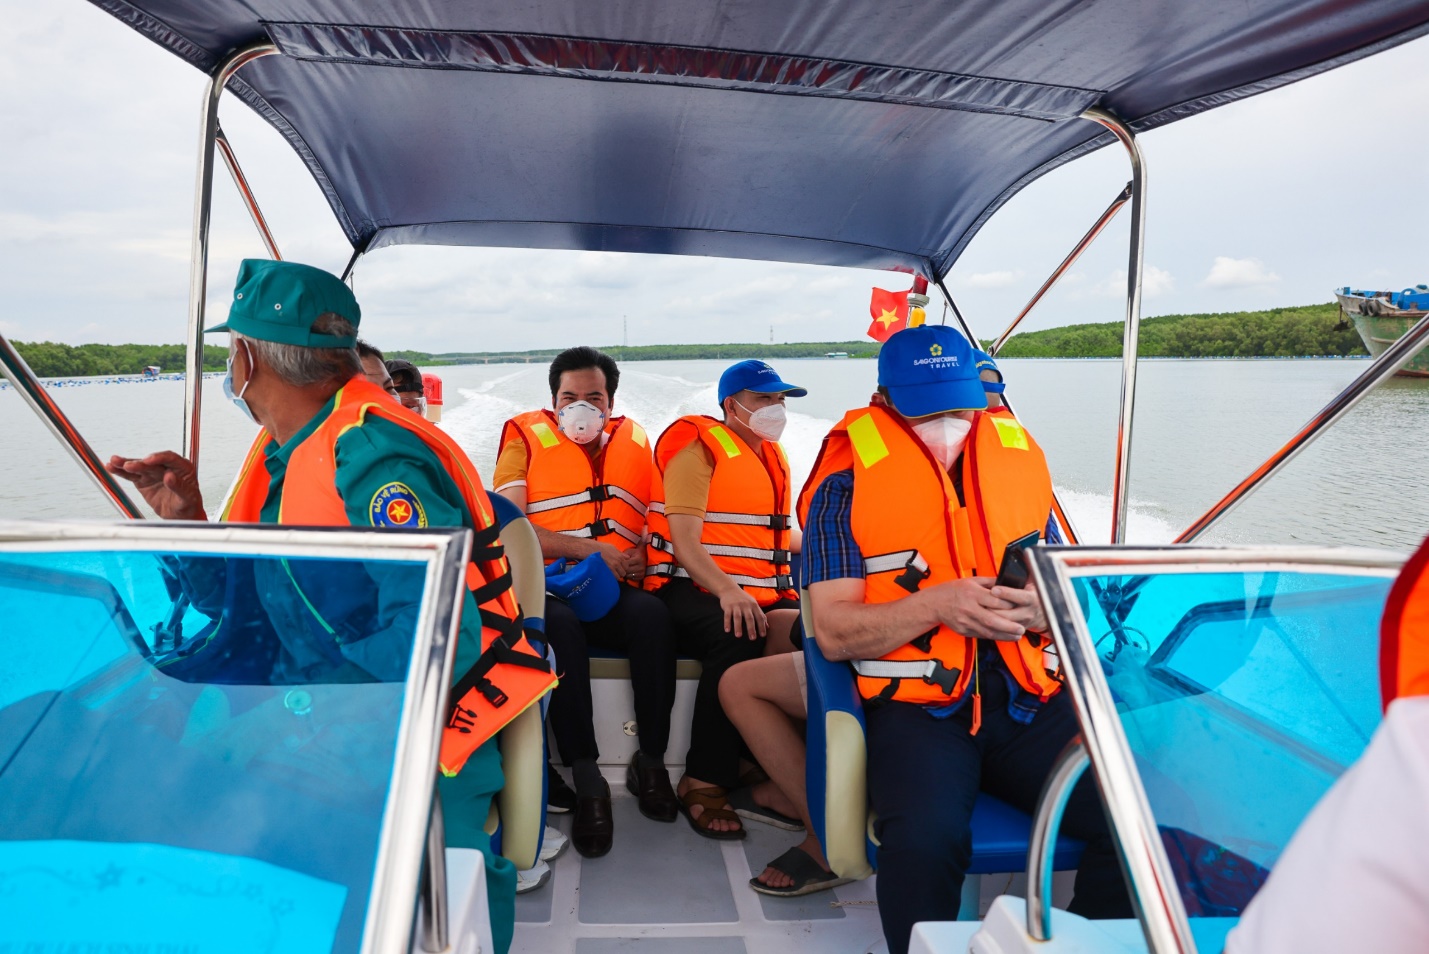 Du lịch Cần Giờ: Các y bác sĩ thích thú đi ca nô, câu cá sấu ở rừng ngập mặn - 5